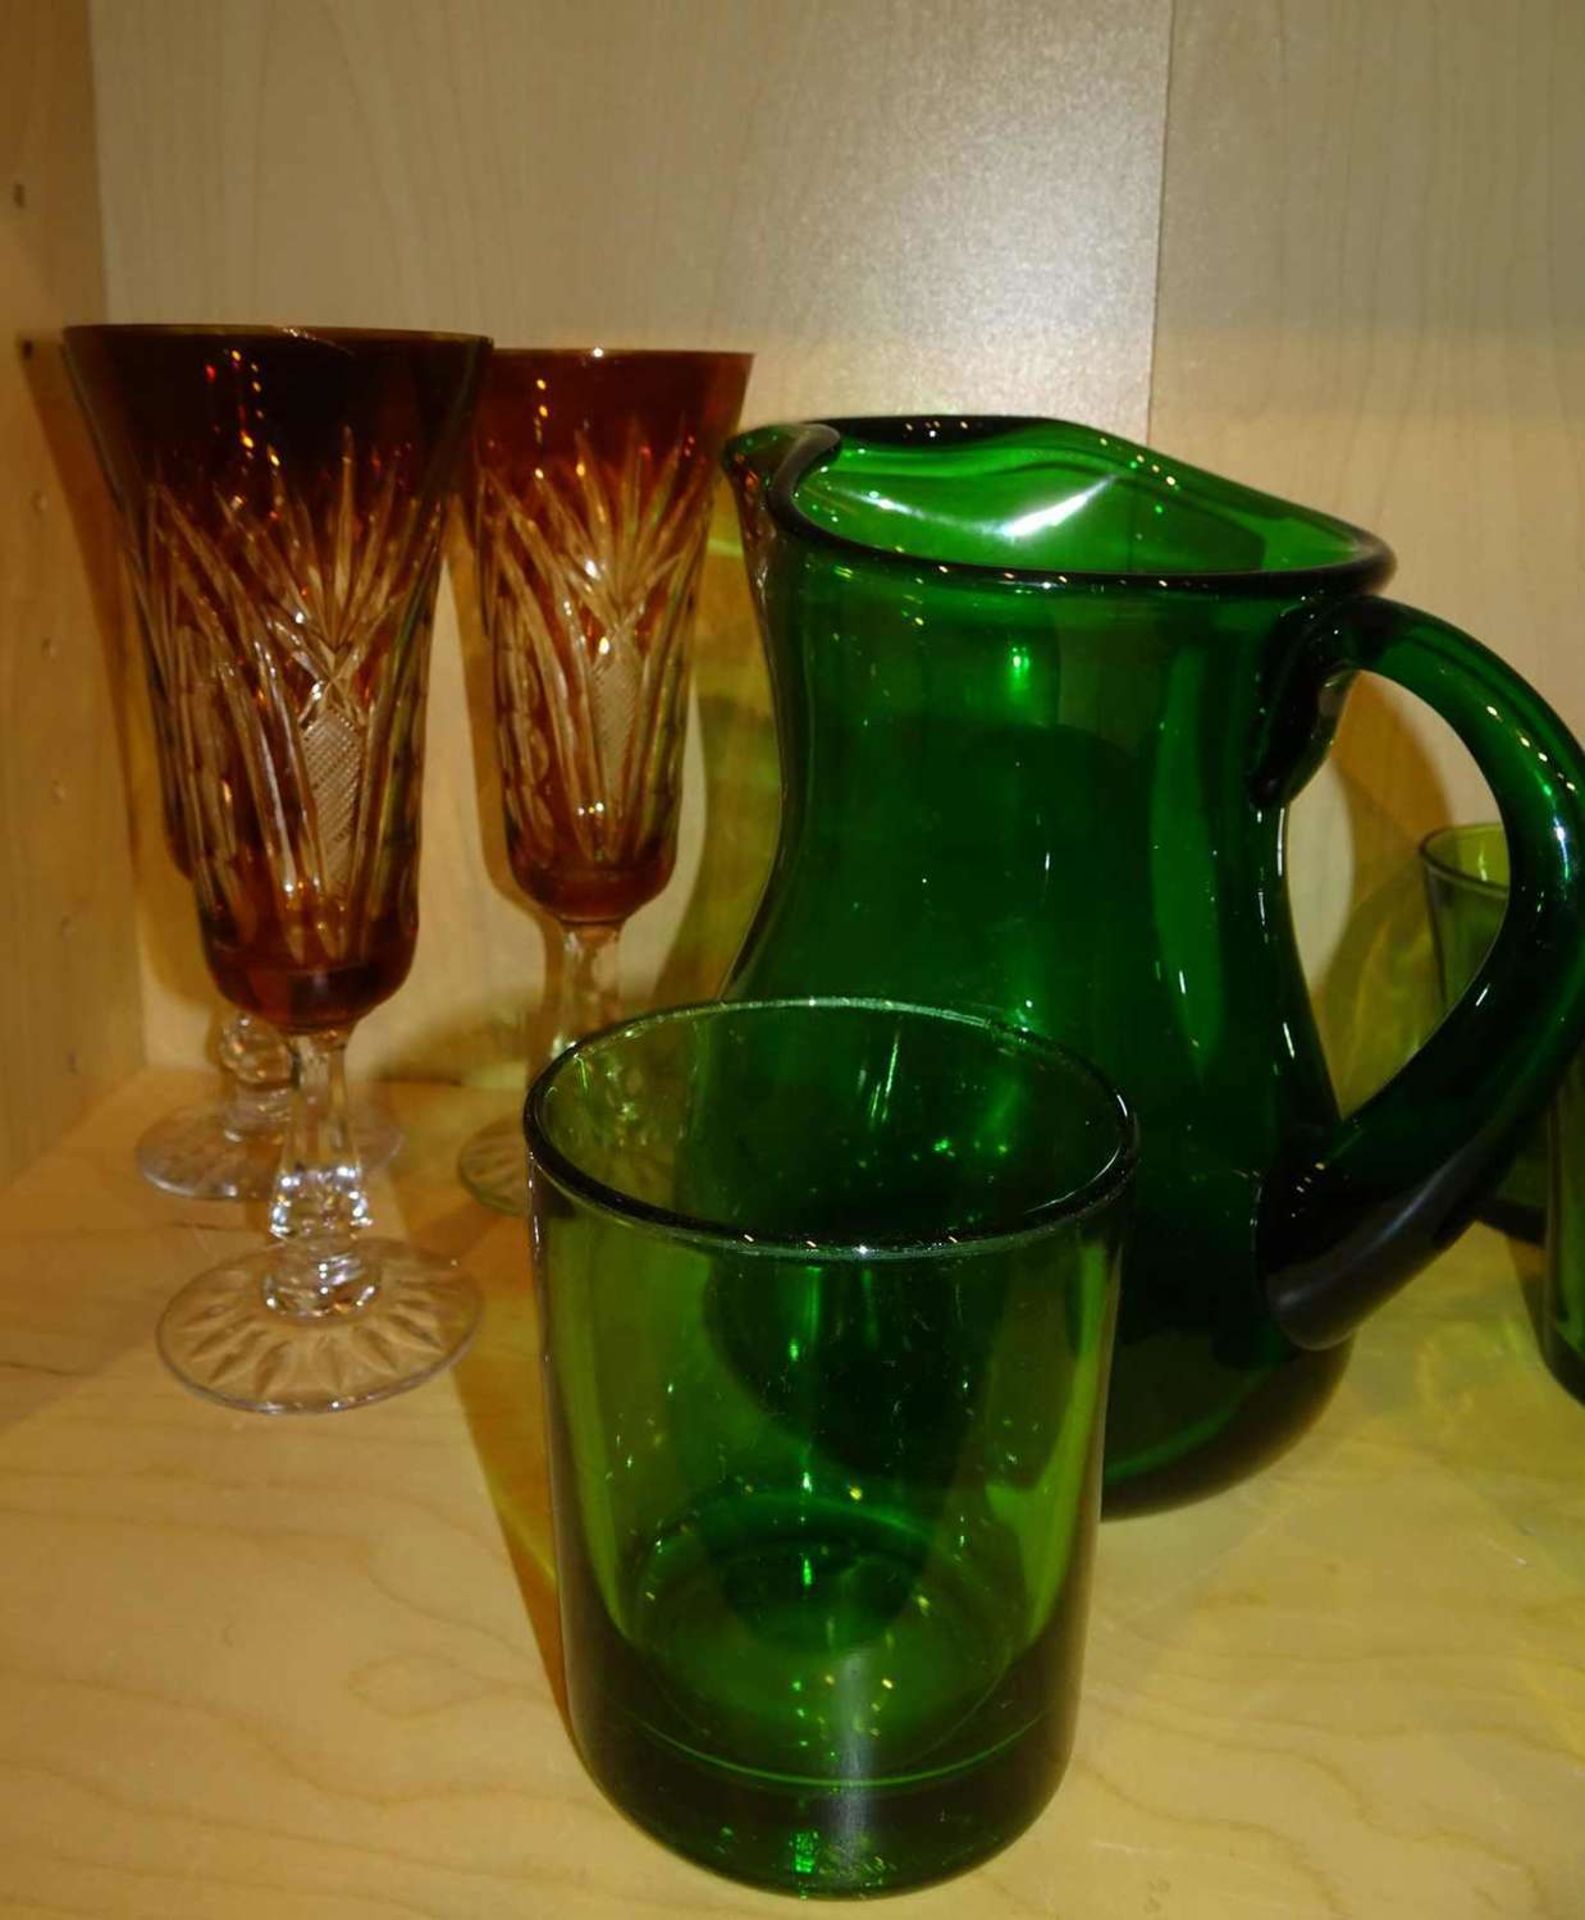 Großes Lot Buntglas, dabei 1 Karaffe und 13 Gläser in grün, 11 Gläser in rot, sowie 3 rote Kristall - Bild 2 aus 2